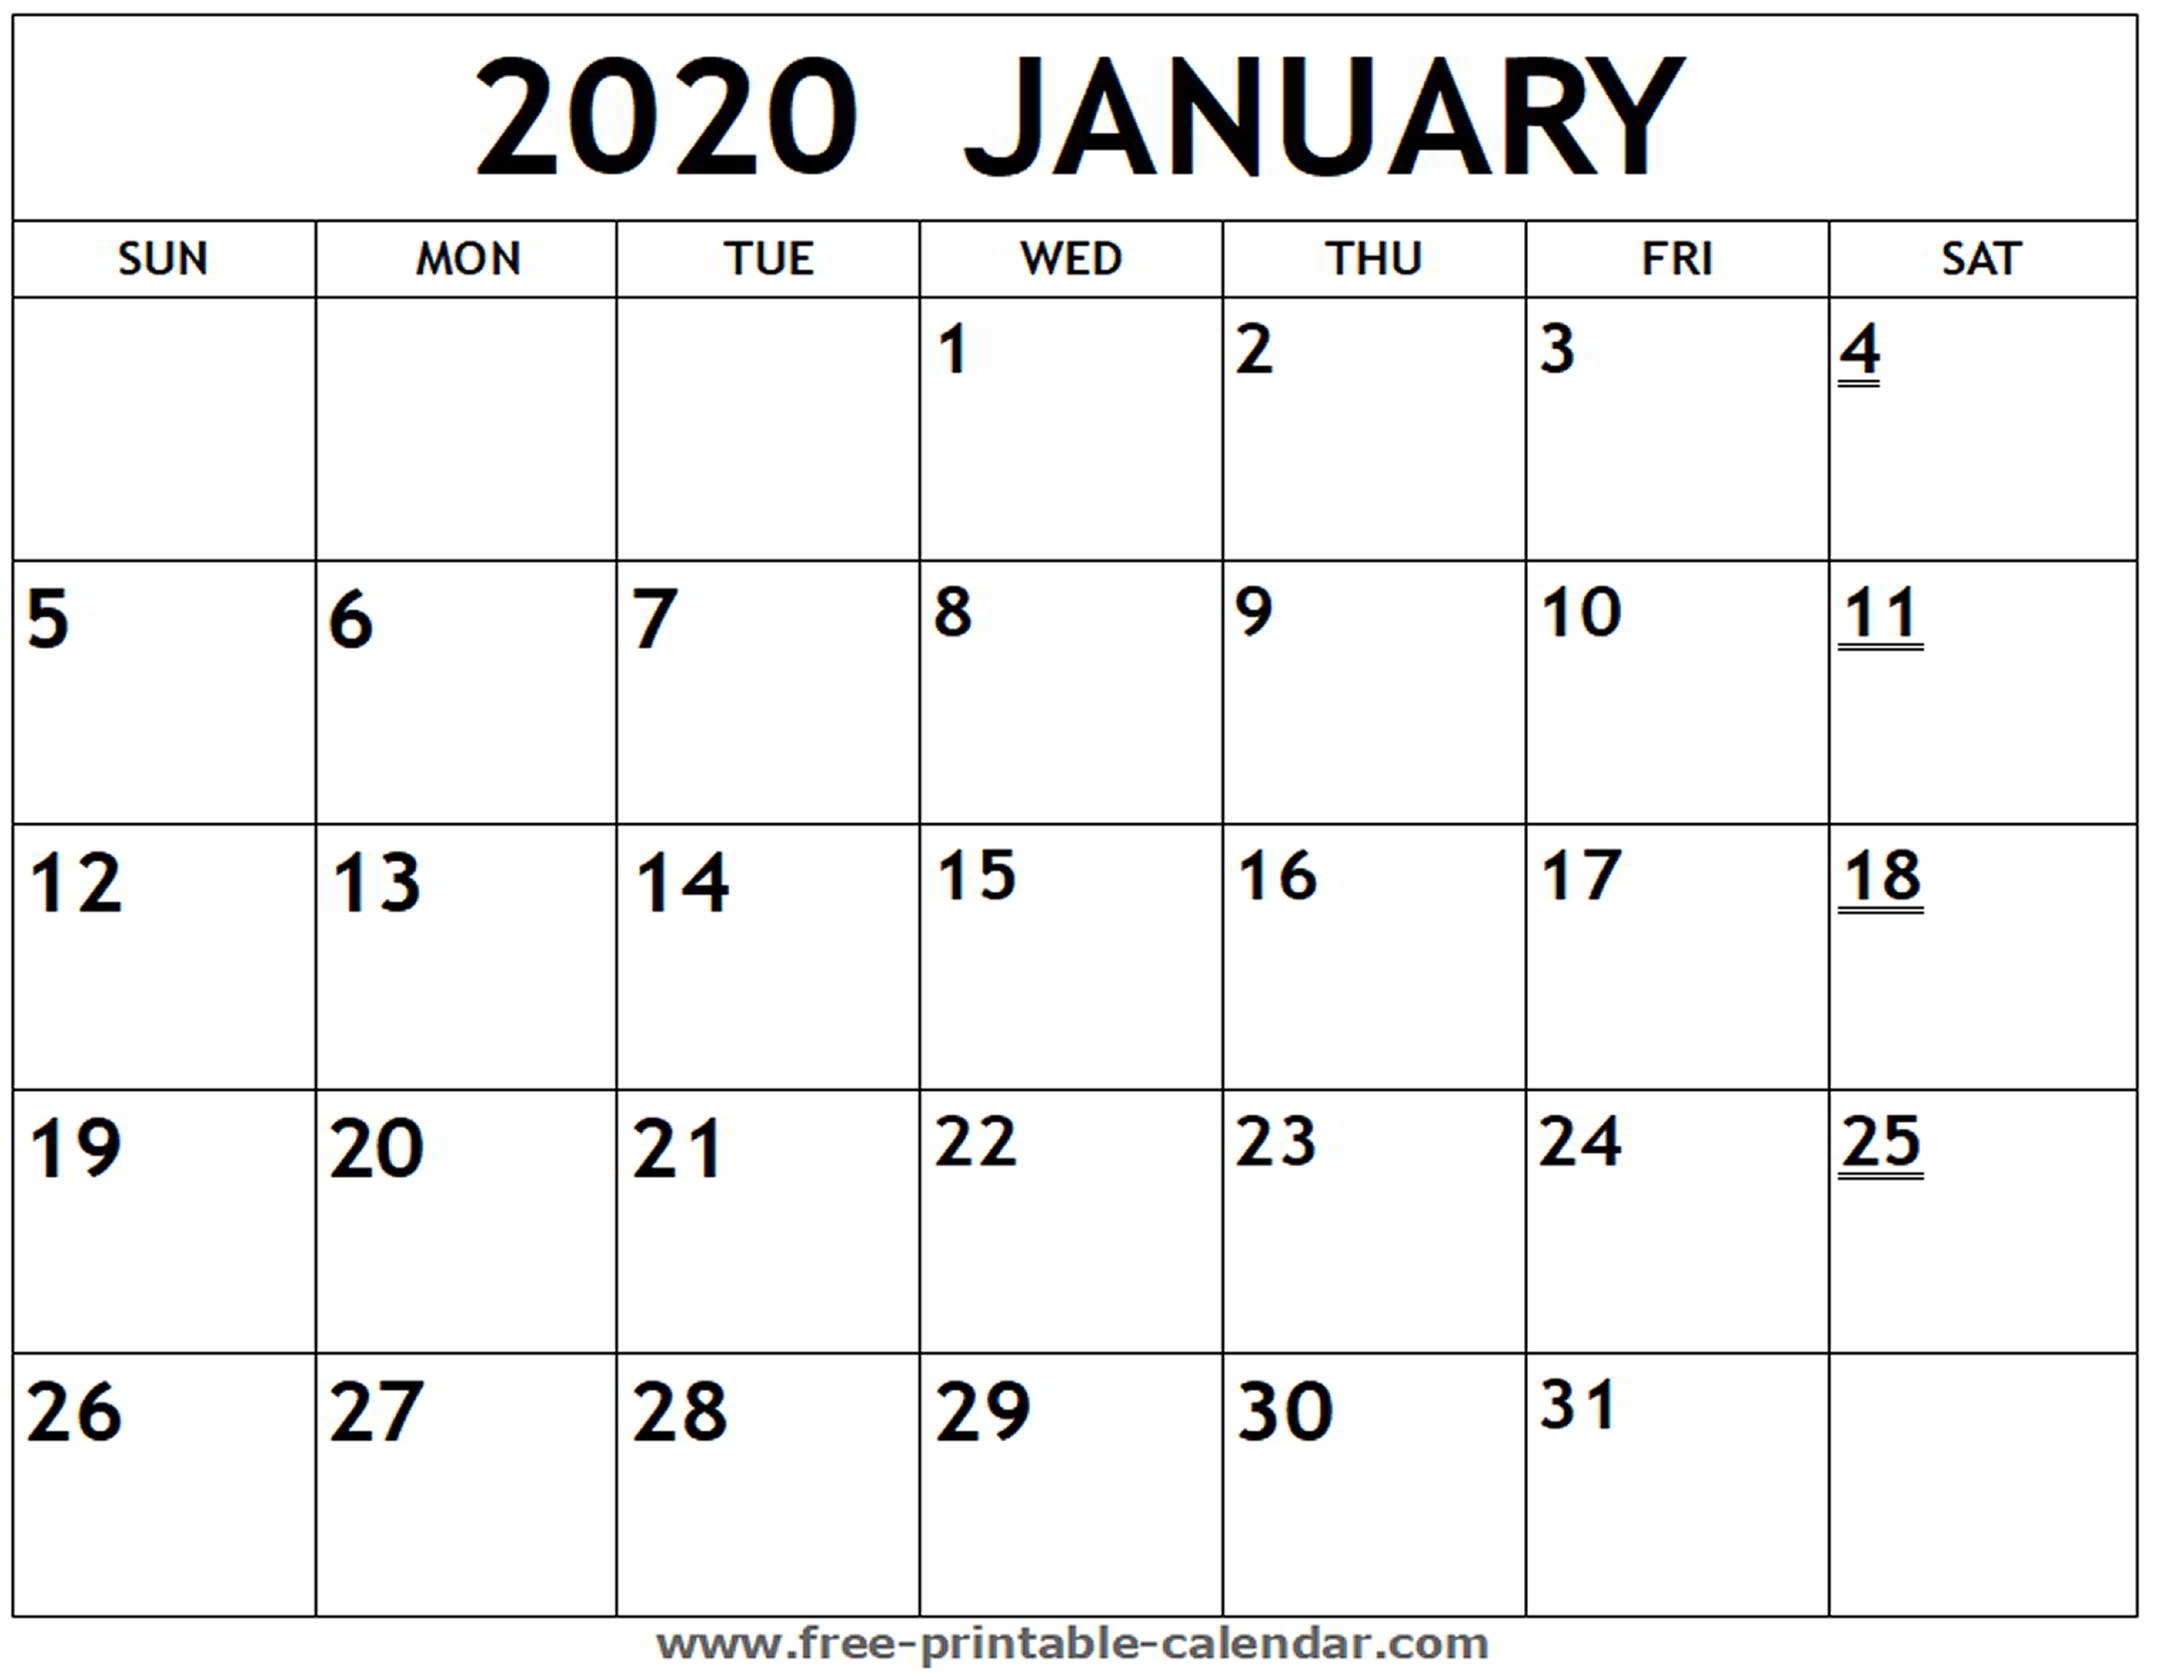 Printable 2020 January Calendar - Free-Printable-Calendar Extraordinary Free Printable Monthly Calendar 2020